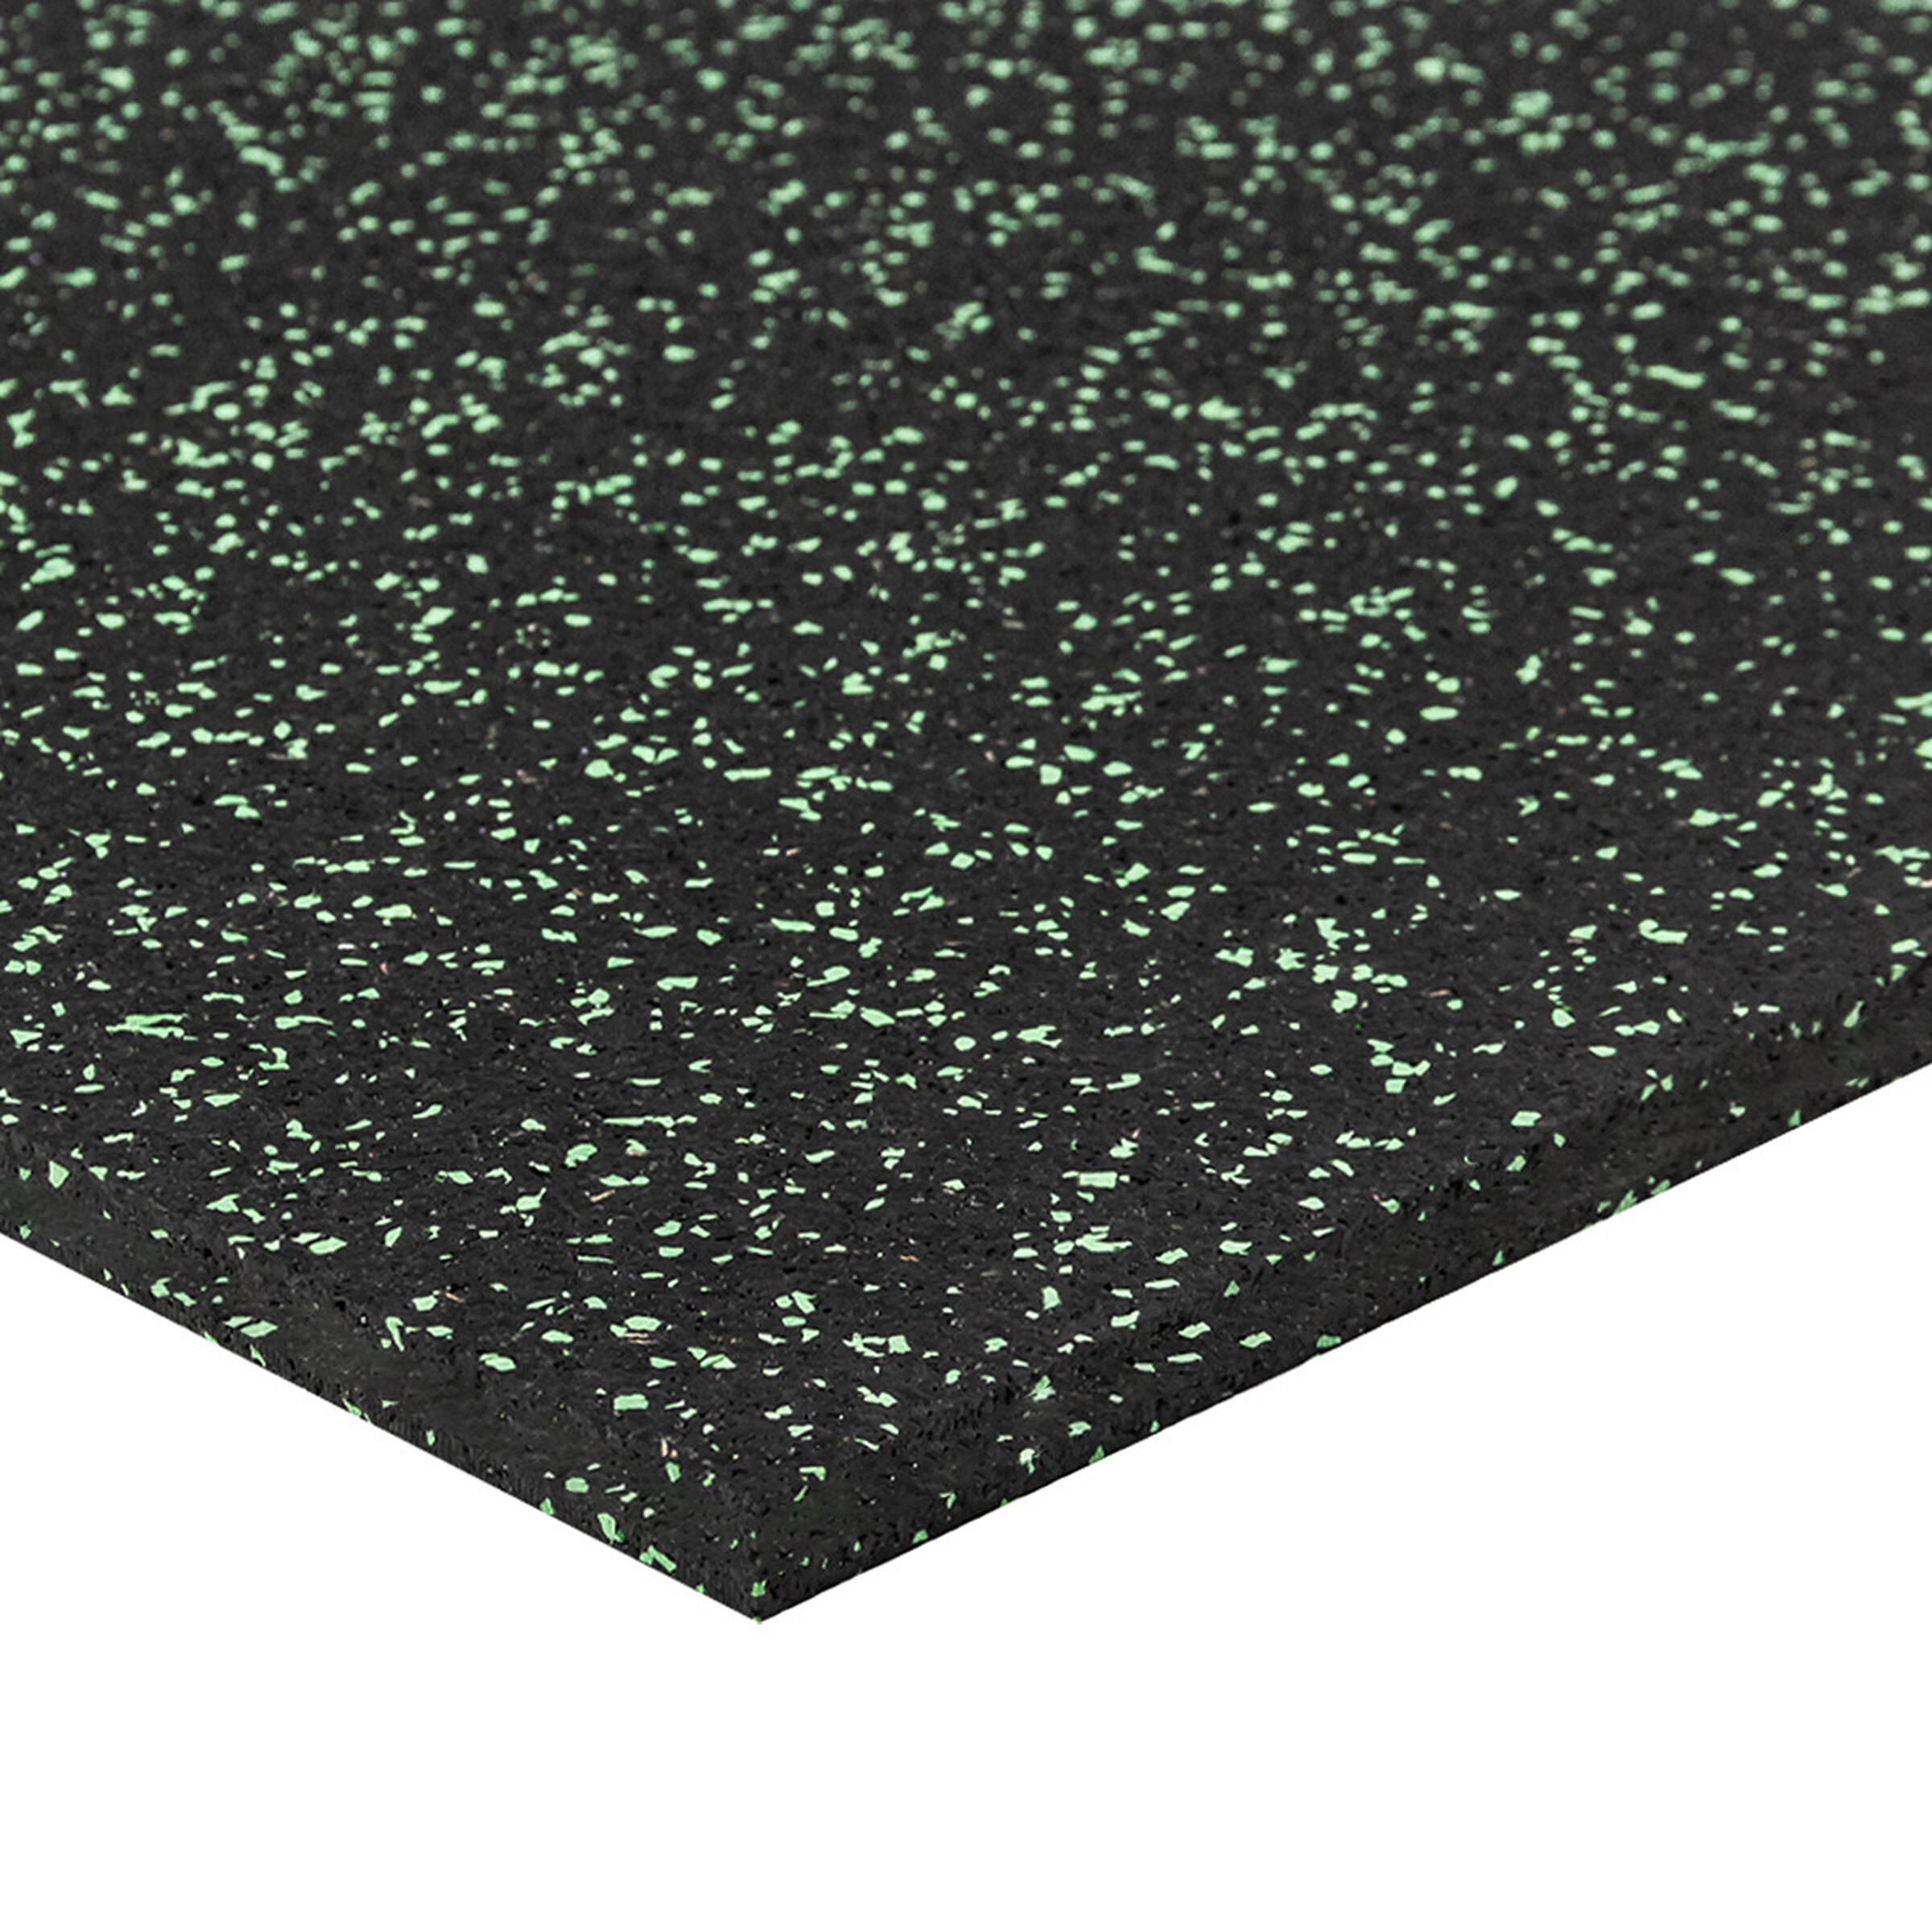 Černo-zelená gumová modulová puzzle dlažba (okraj) FLOMA FitFlo SF1050 - délka 50 cm, šířka 50 cm, výška 1,6 cm